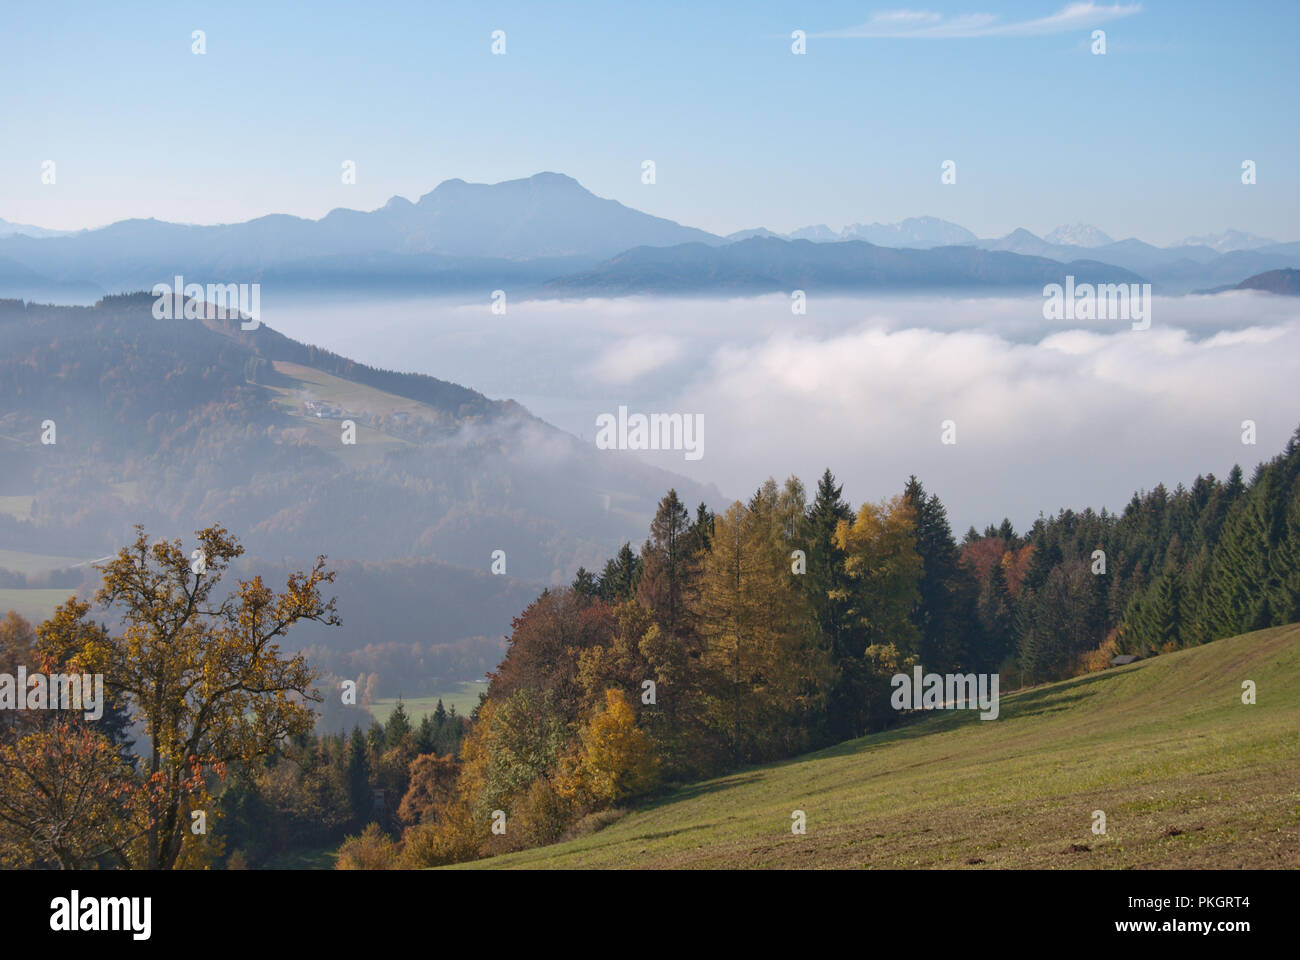 Paisaje otoñal con montañas brumosas a través del valle cubierto de niebla en el clima soleado de los Alpes. Foto de stock